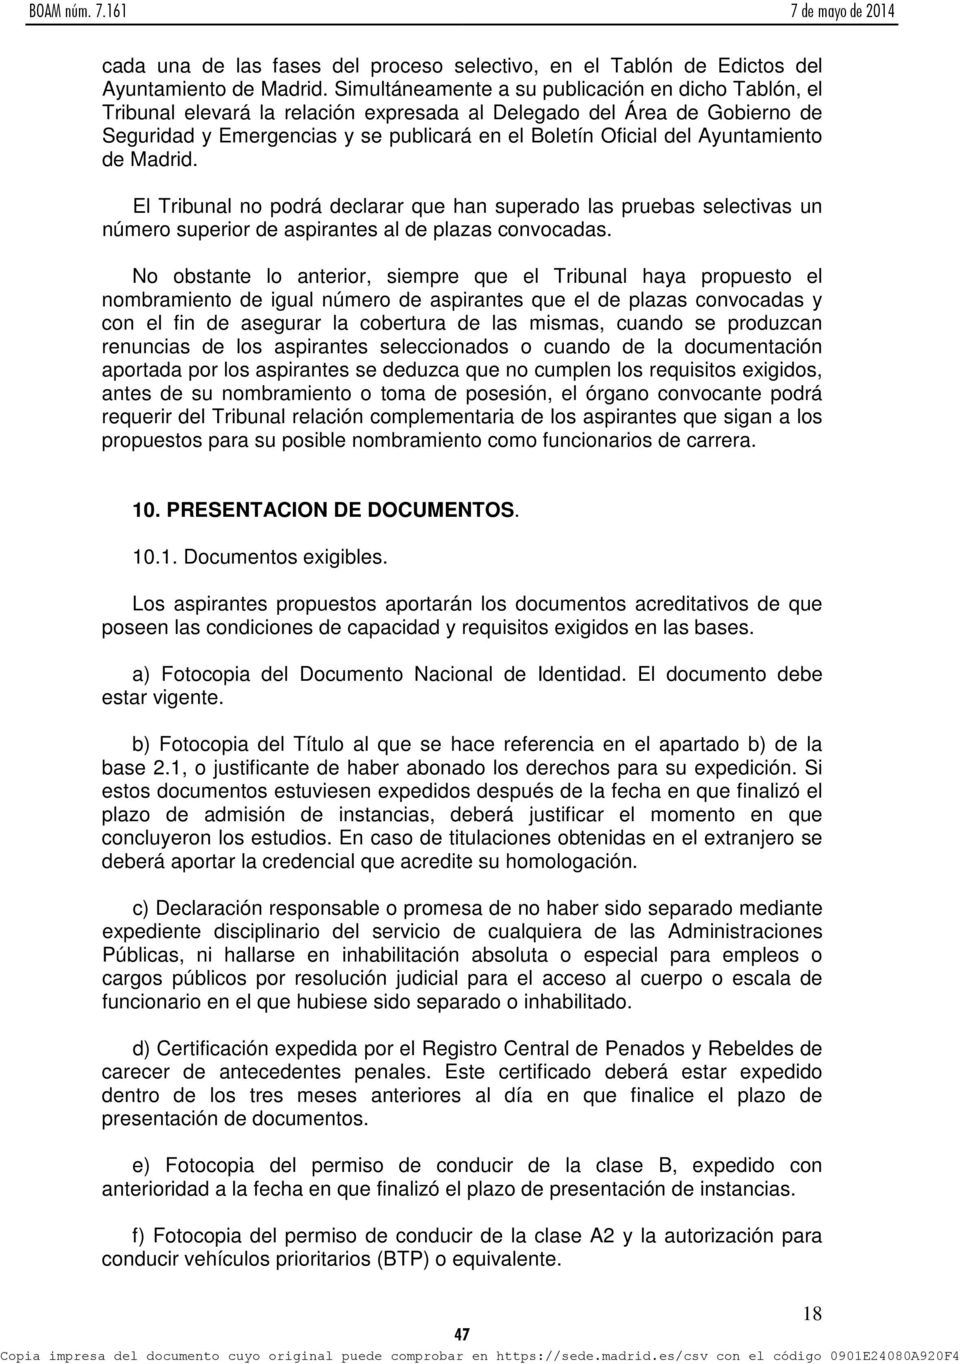 Ayuntamiento de Madrid. El Tribunal no podrá declarar que han superado las pruebas selectivas un número superior de aspirantes al de plazas convocadas.